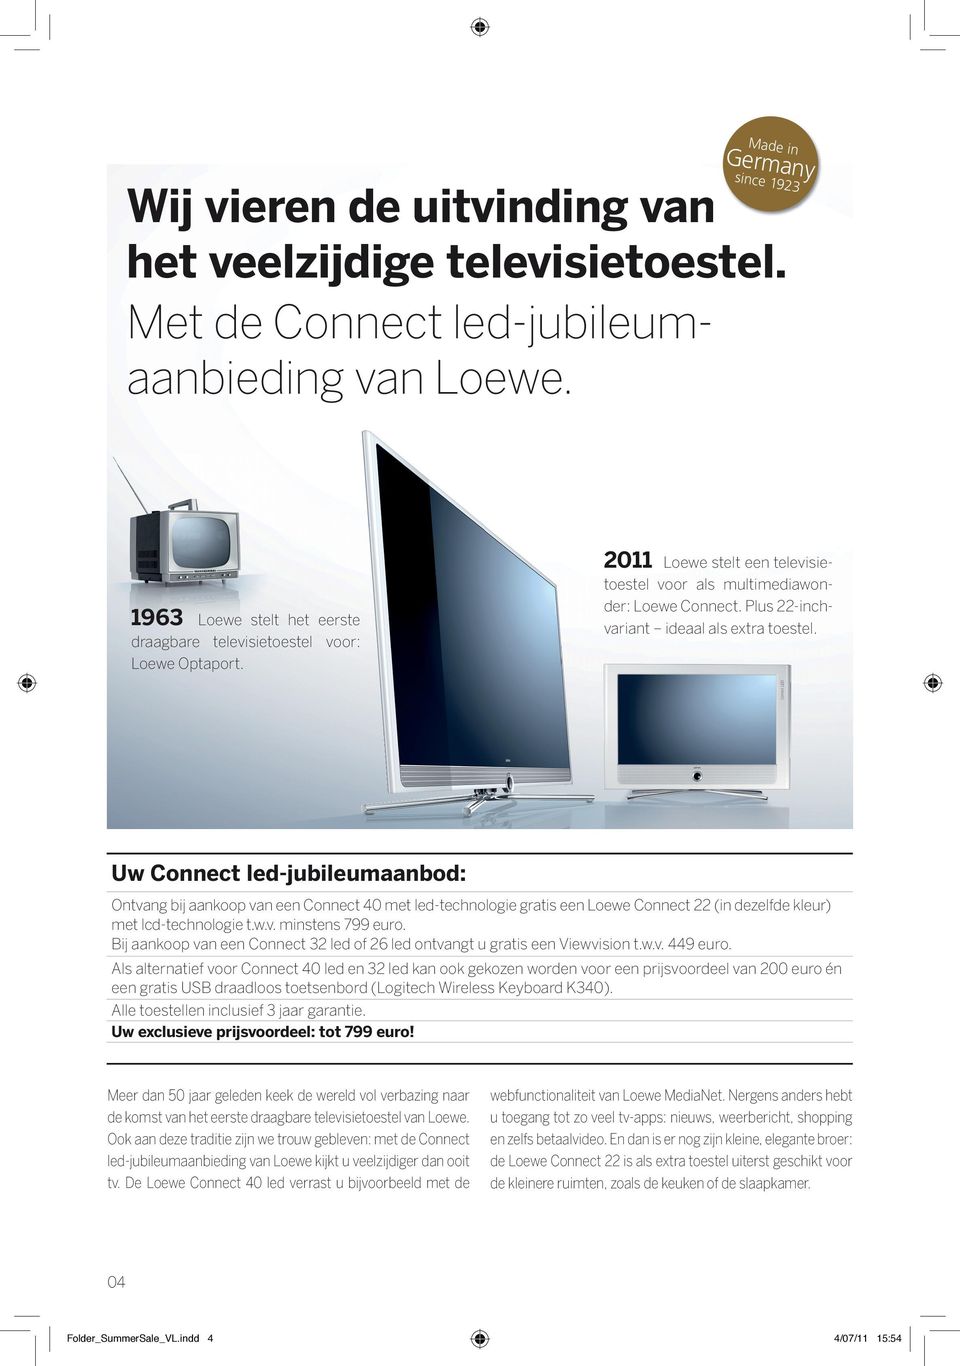 Uw Connect led-jubileumaanbod: Ontvang bij aankoop van een Connect 40 met led-technologie gratis een Loewe Connect 22 (in dezelfde kleur) met lcd-technologie t.w.v. minstens 799 euro.